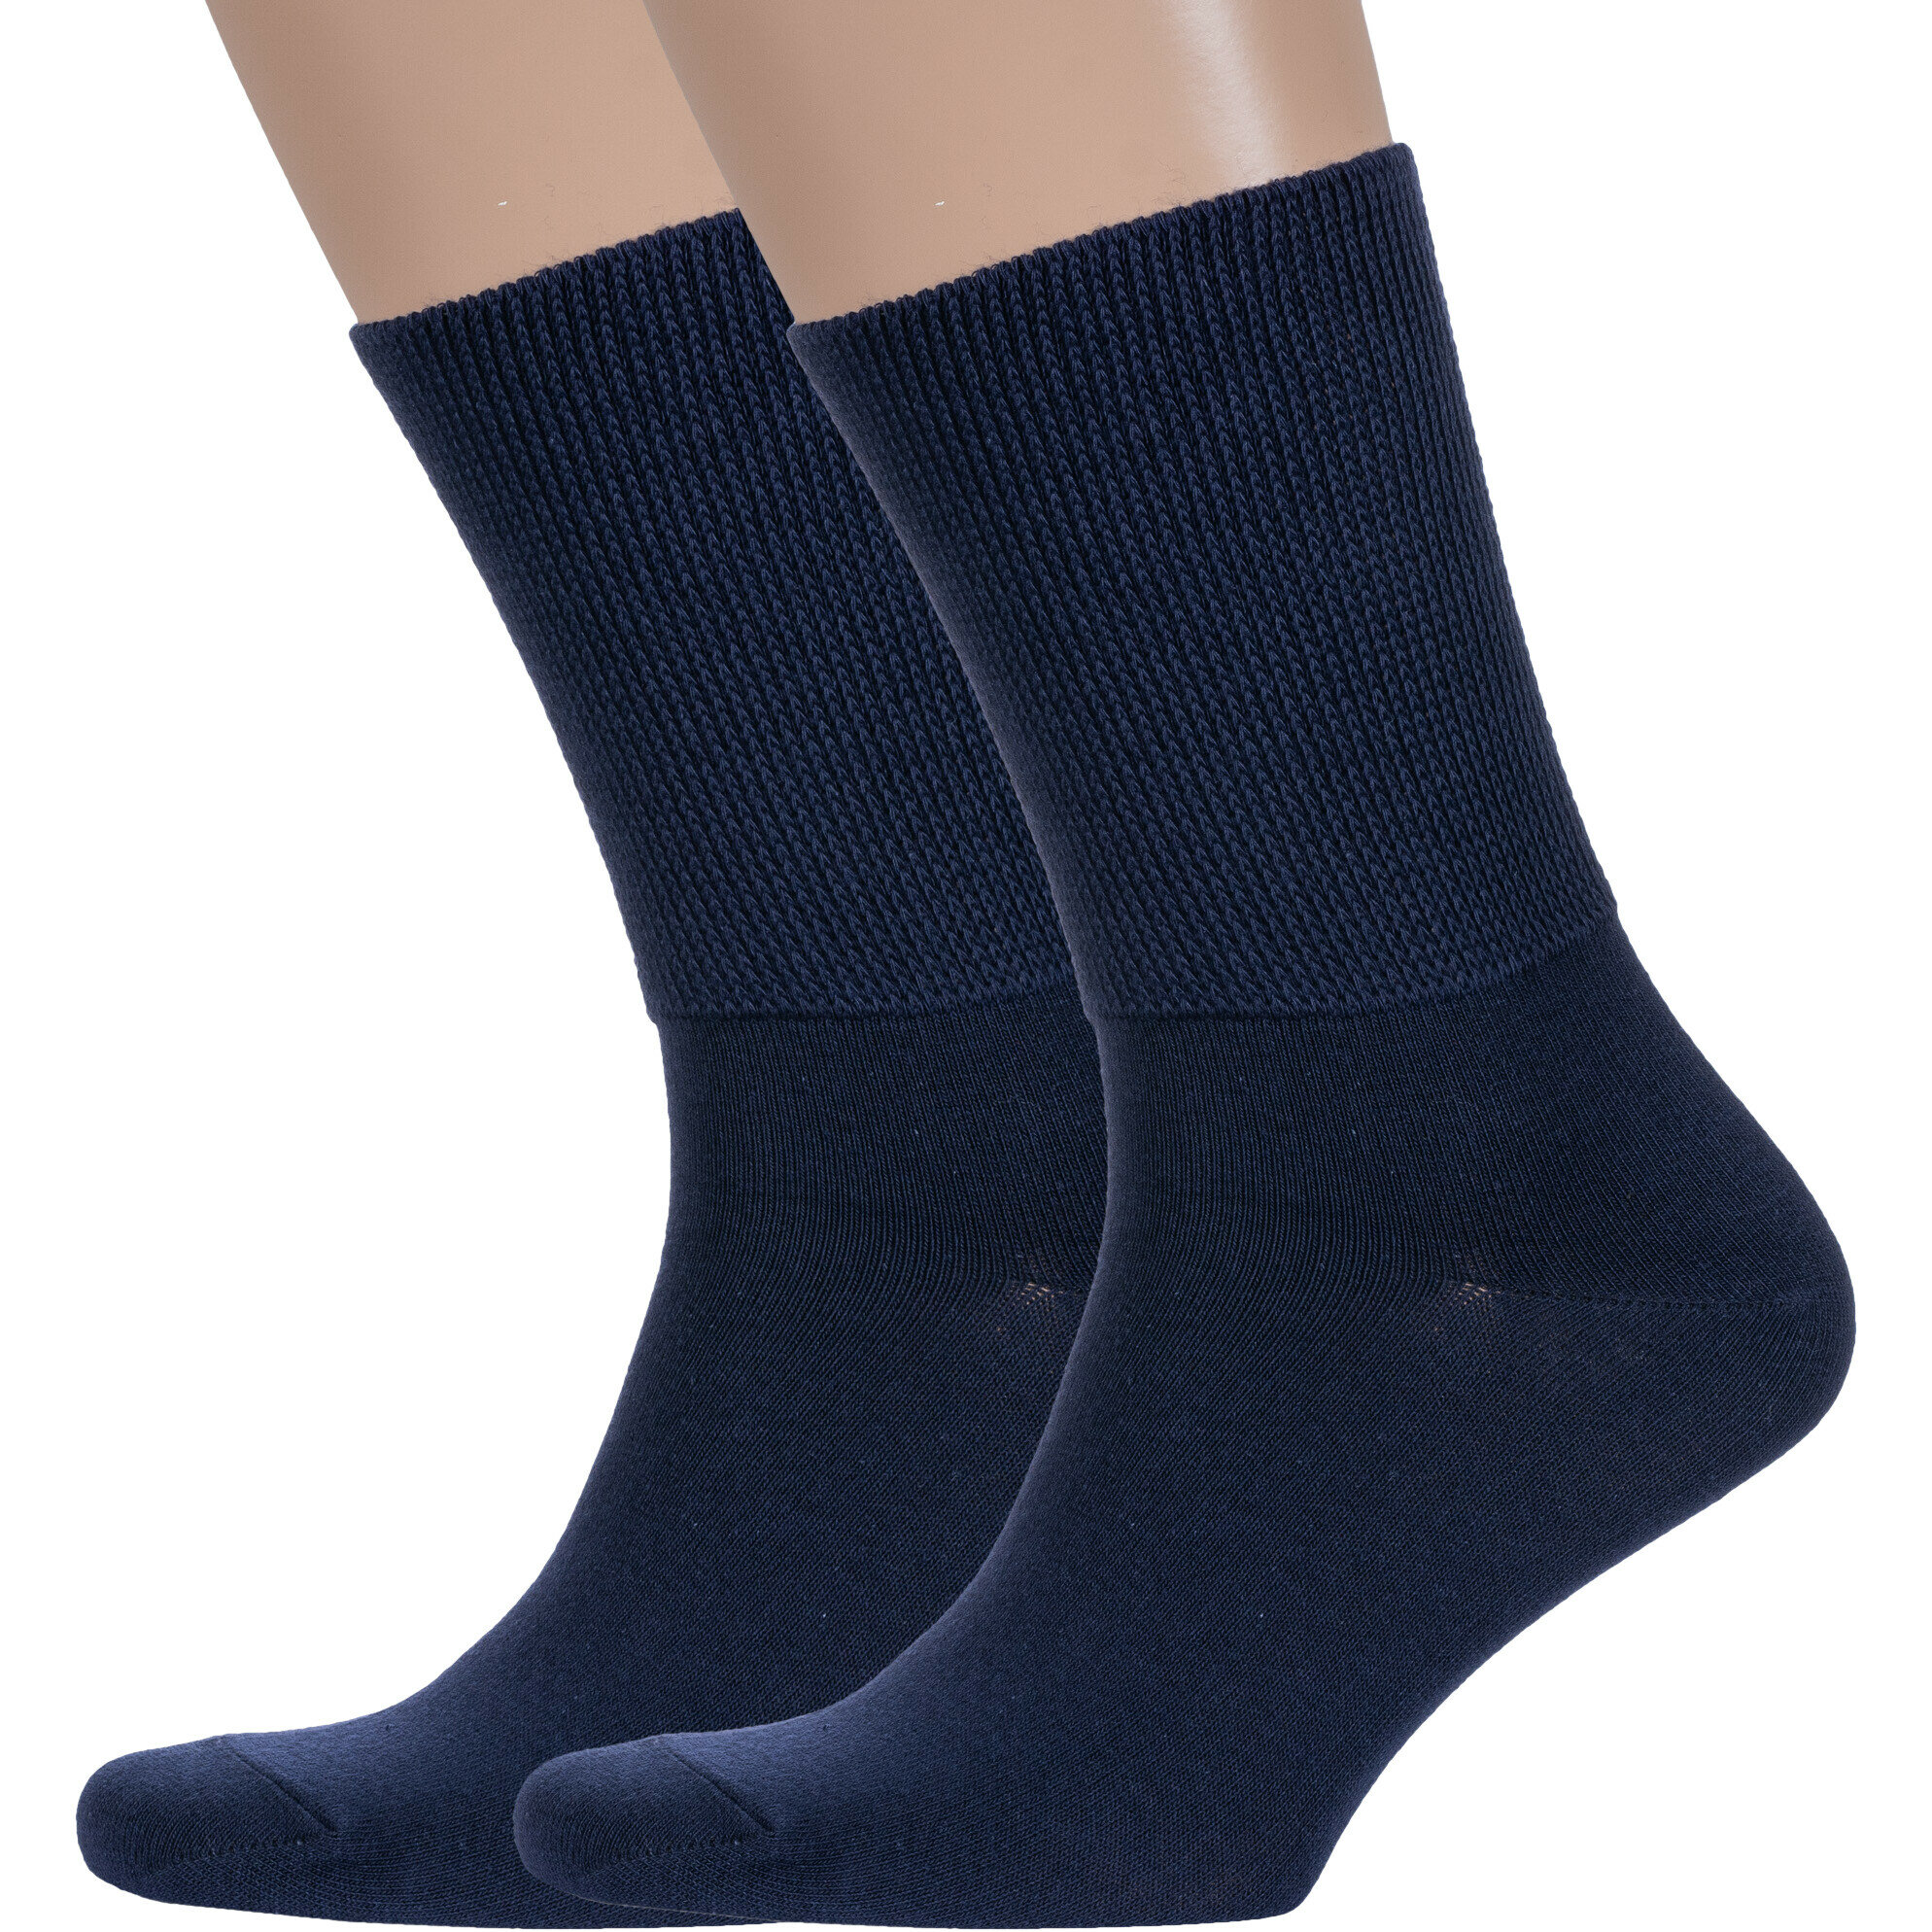 Комплект из 2 пар мужских носков "Борисоглебский трикотаж" с широкой ослабленной резинкой 2-4С910 размер 29-31